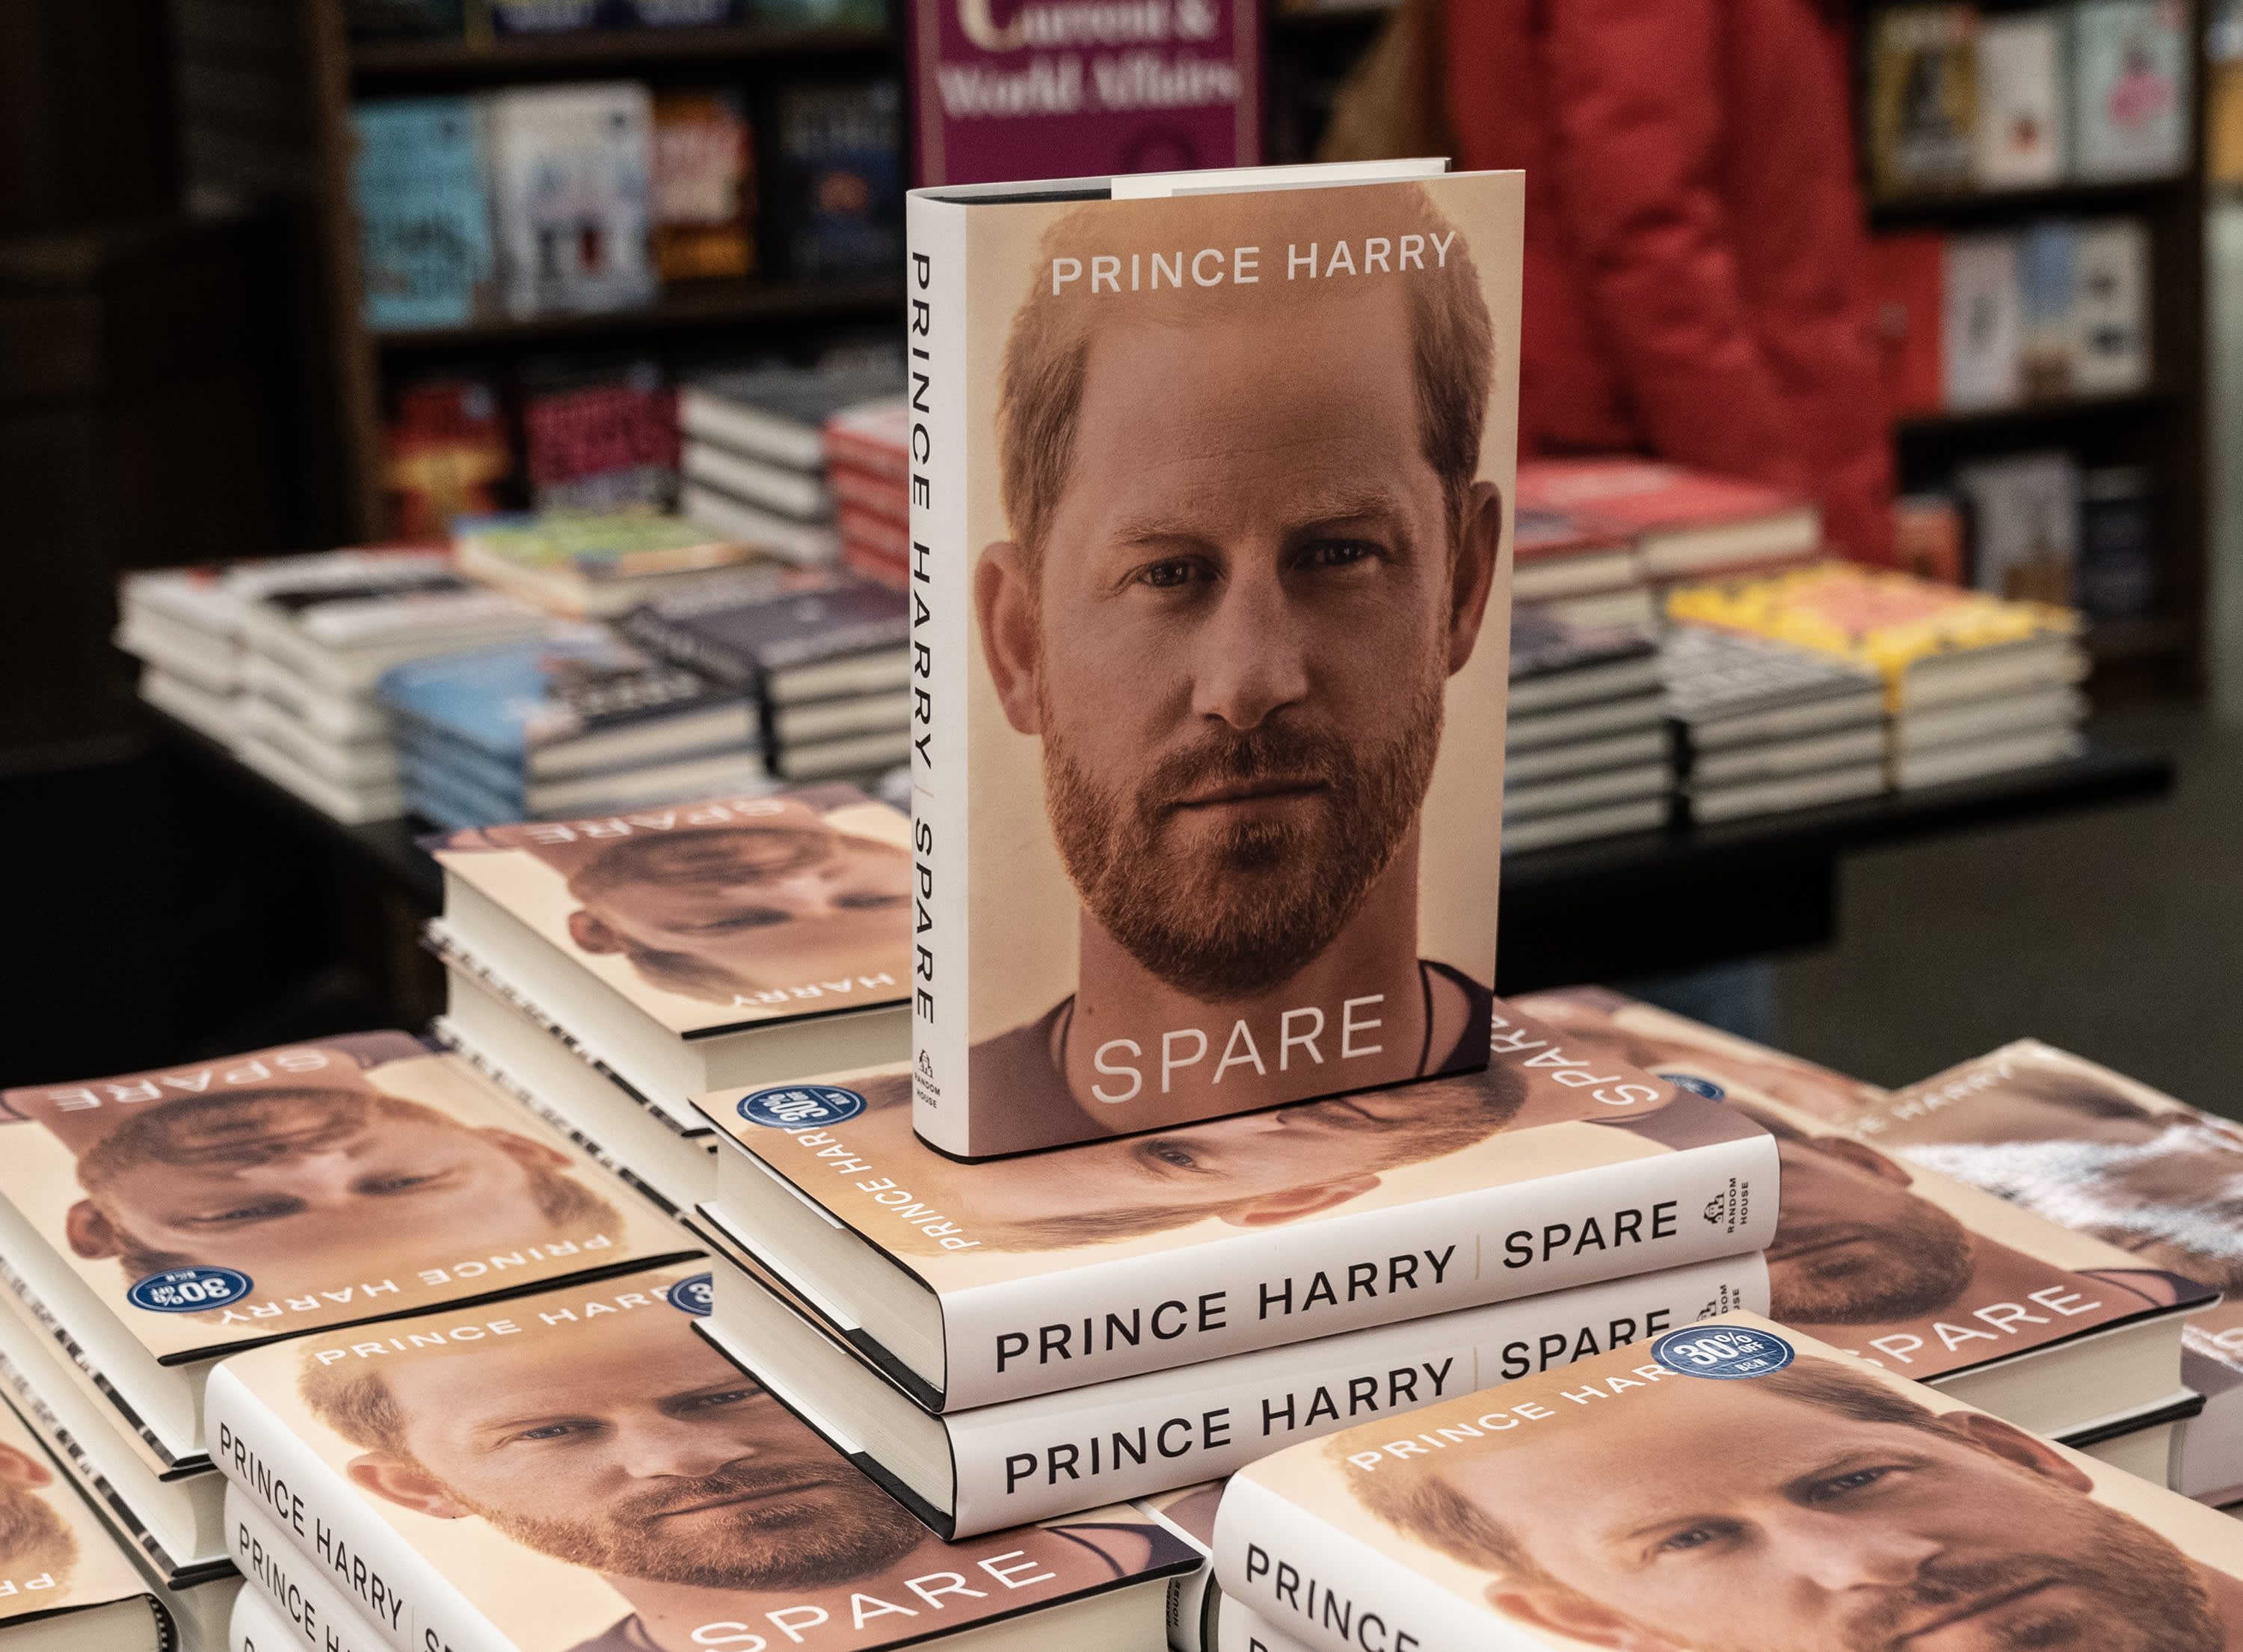 Prince Harry's 'Spare' ghostwriter also wrote bestselling Nike memoir